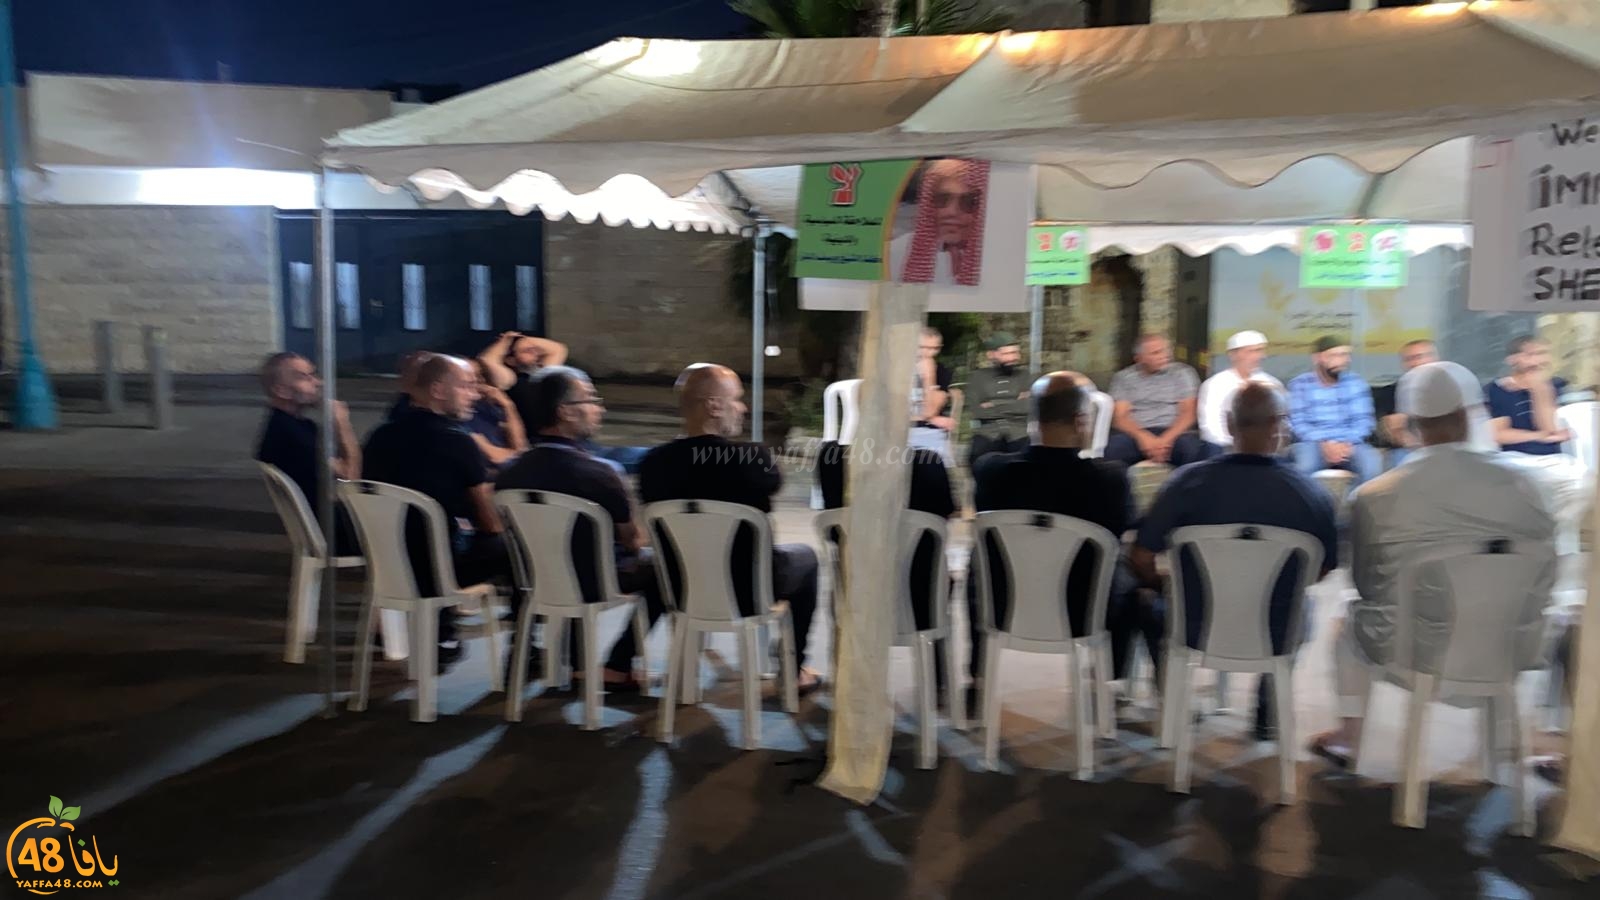 اللد: خيمة اعتصام تضامنية مع الشيخ يوسف الباز